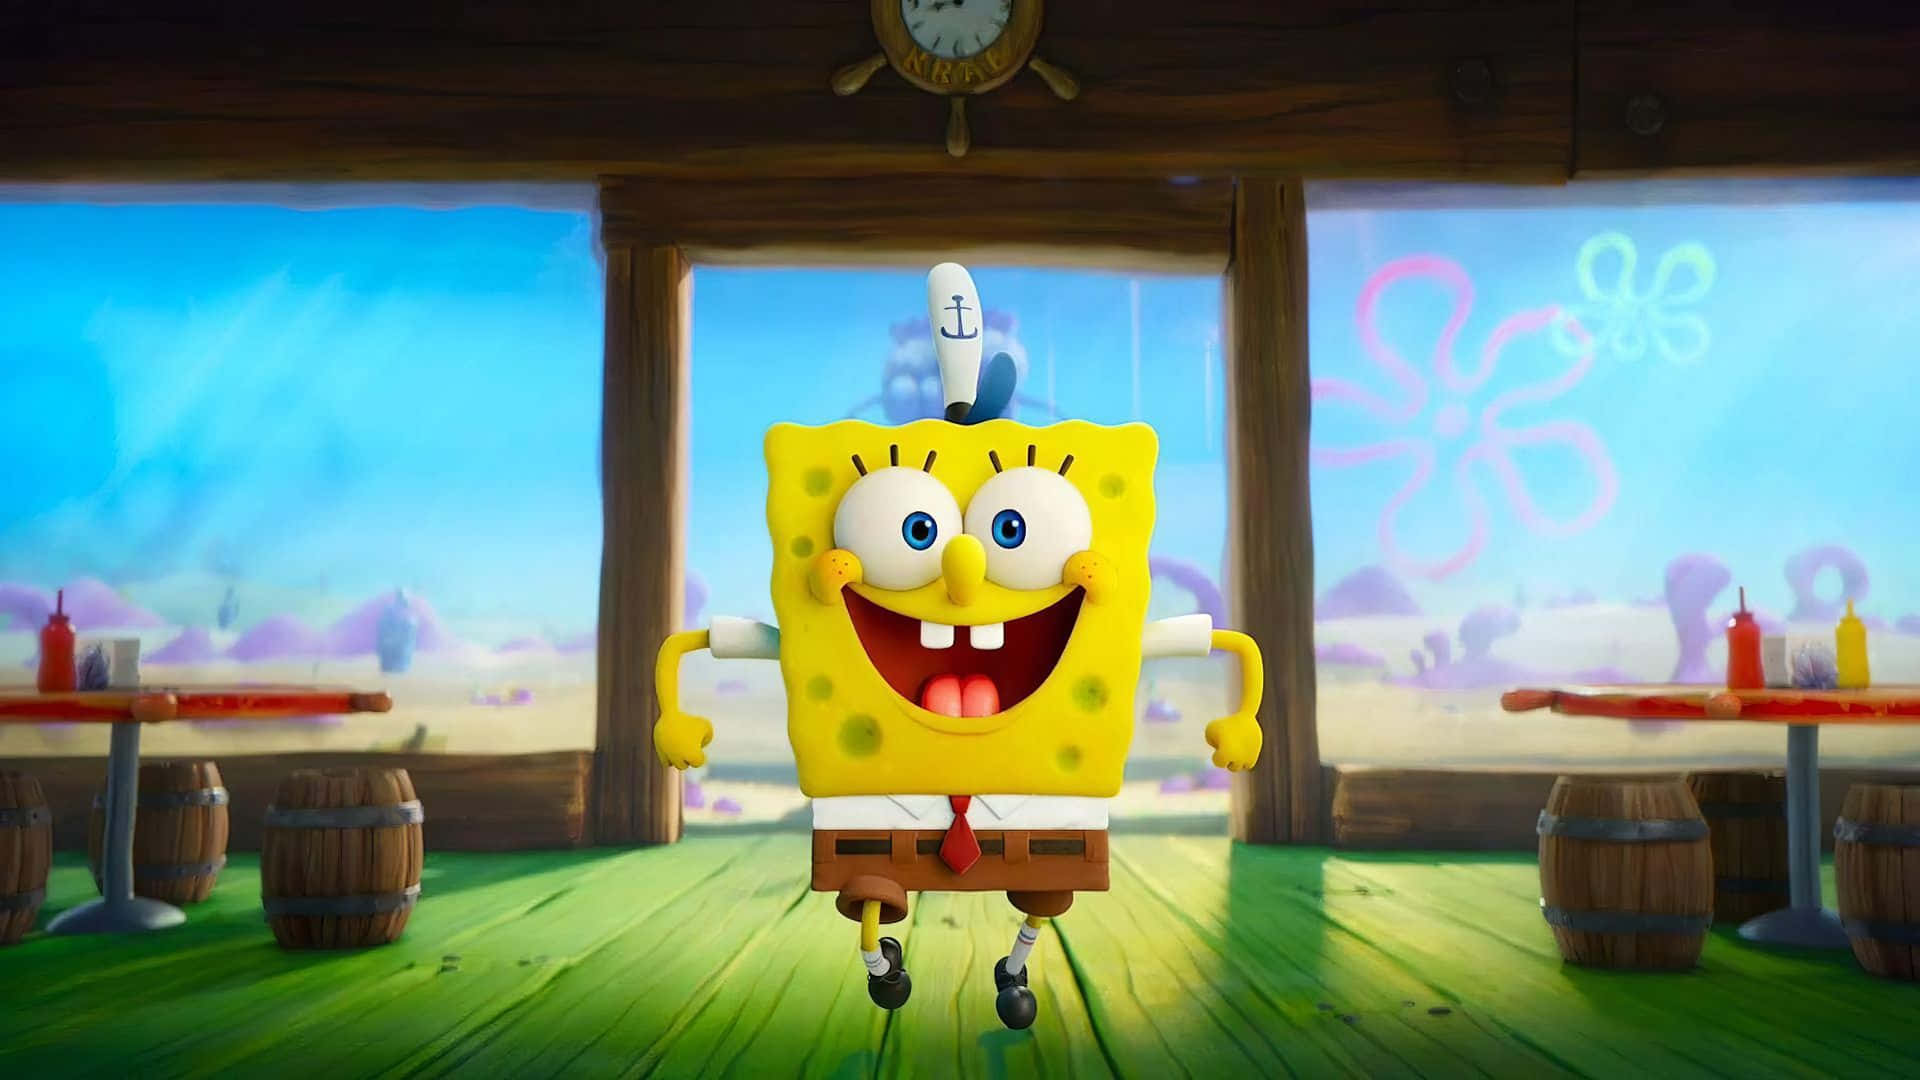 Everyone's favorite sponge, Spongebob Squarepants